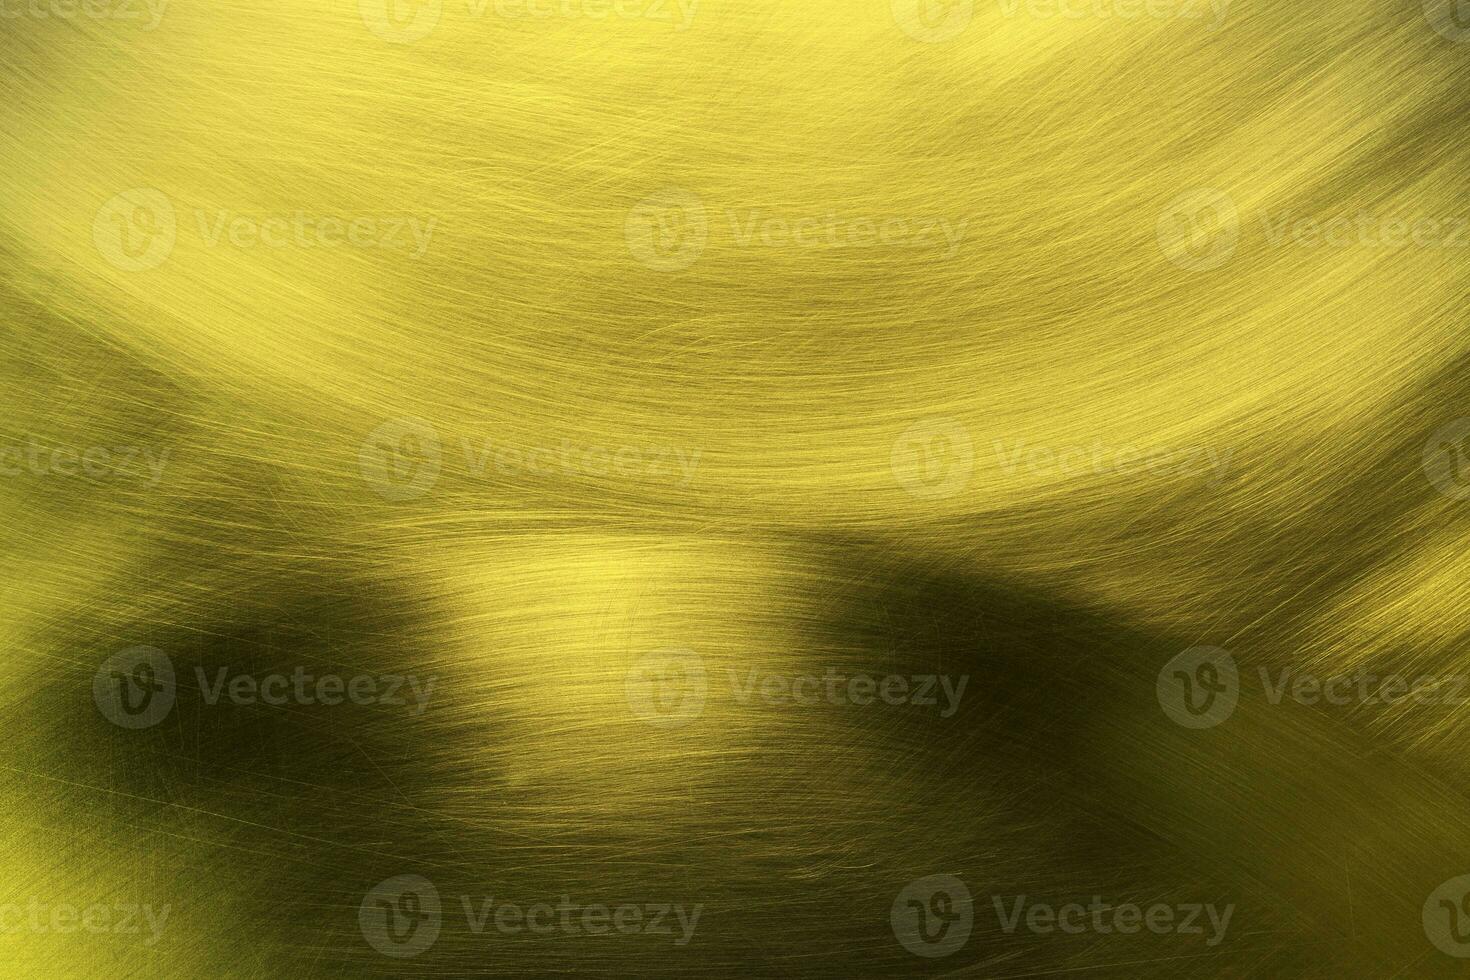 glimmend gouden metaal muur structuur achtergrond, goud patroon foto